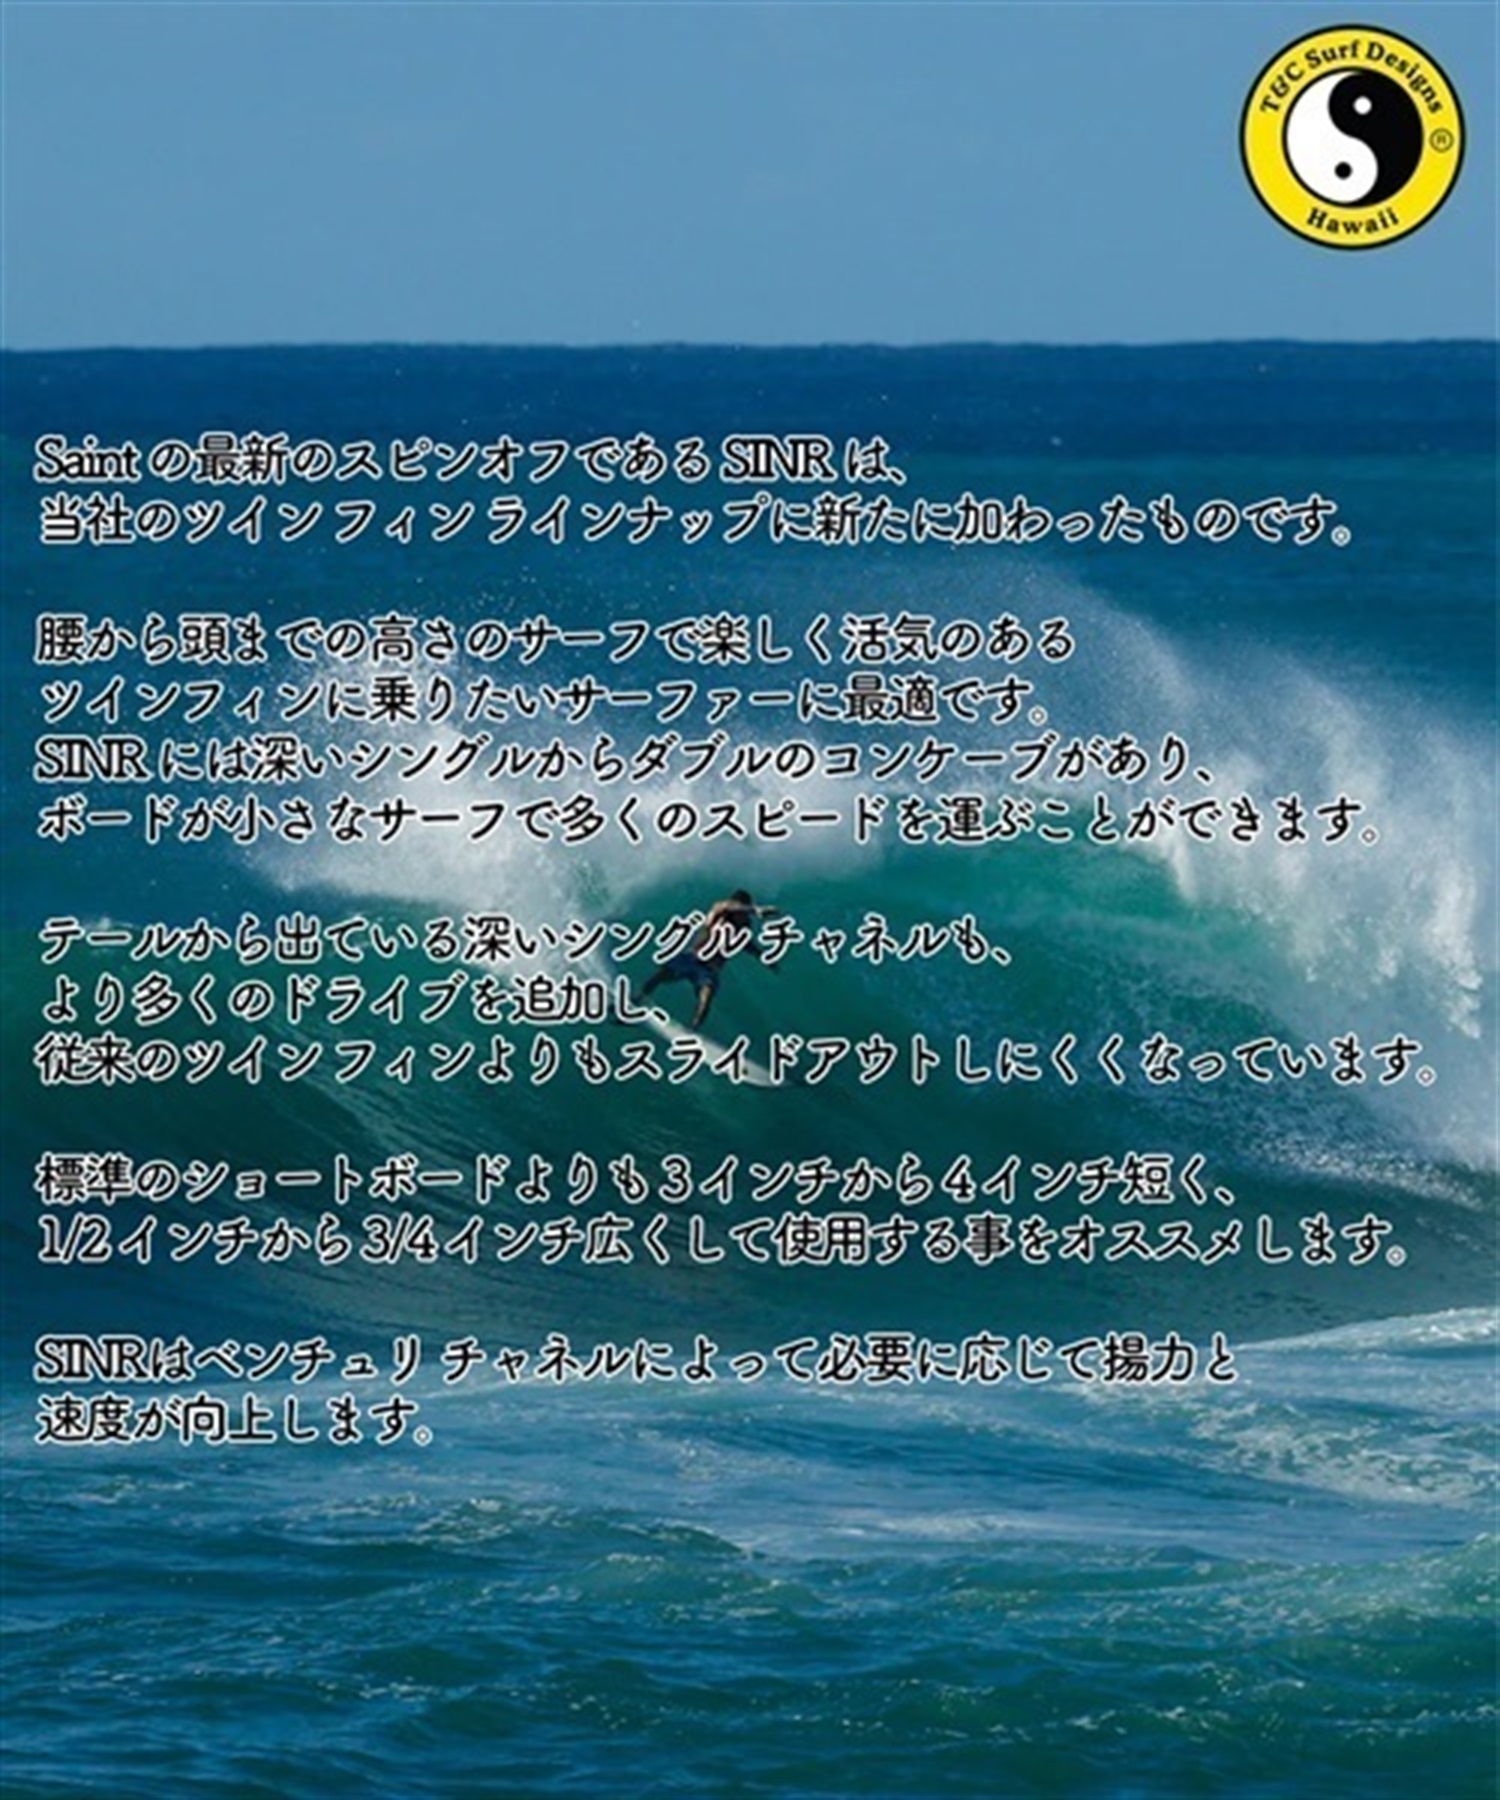 T&C SURF タウン&カントリー SINR GLENN PANG サーフボード　ショートボード ムラサキスポーツ KK D20(BKRD-5.7)